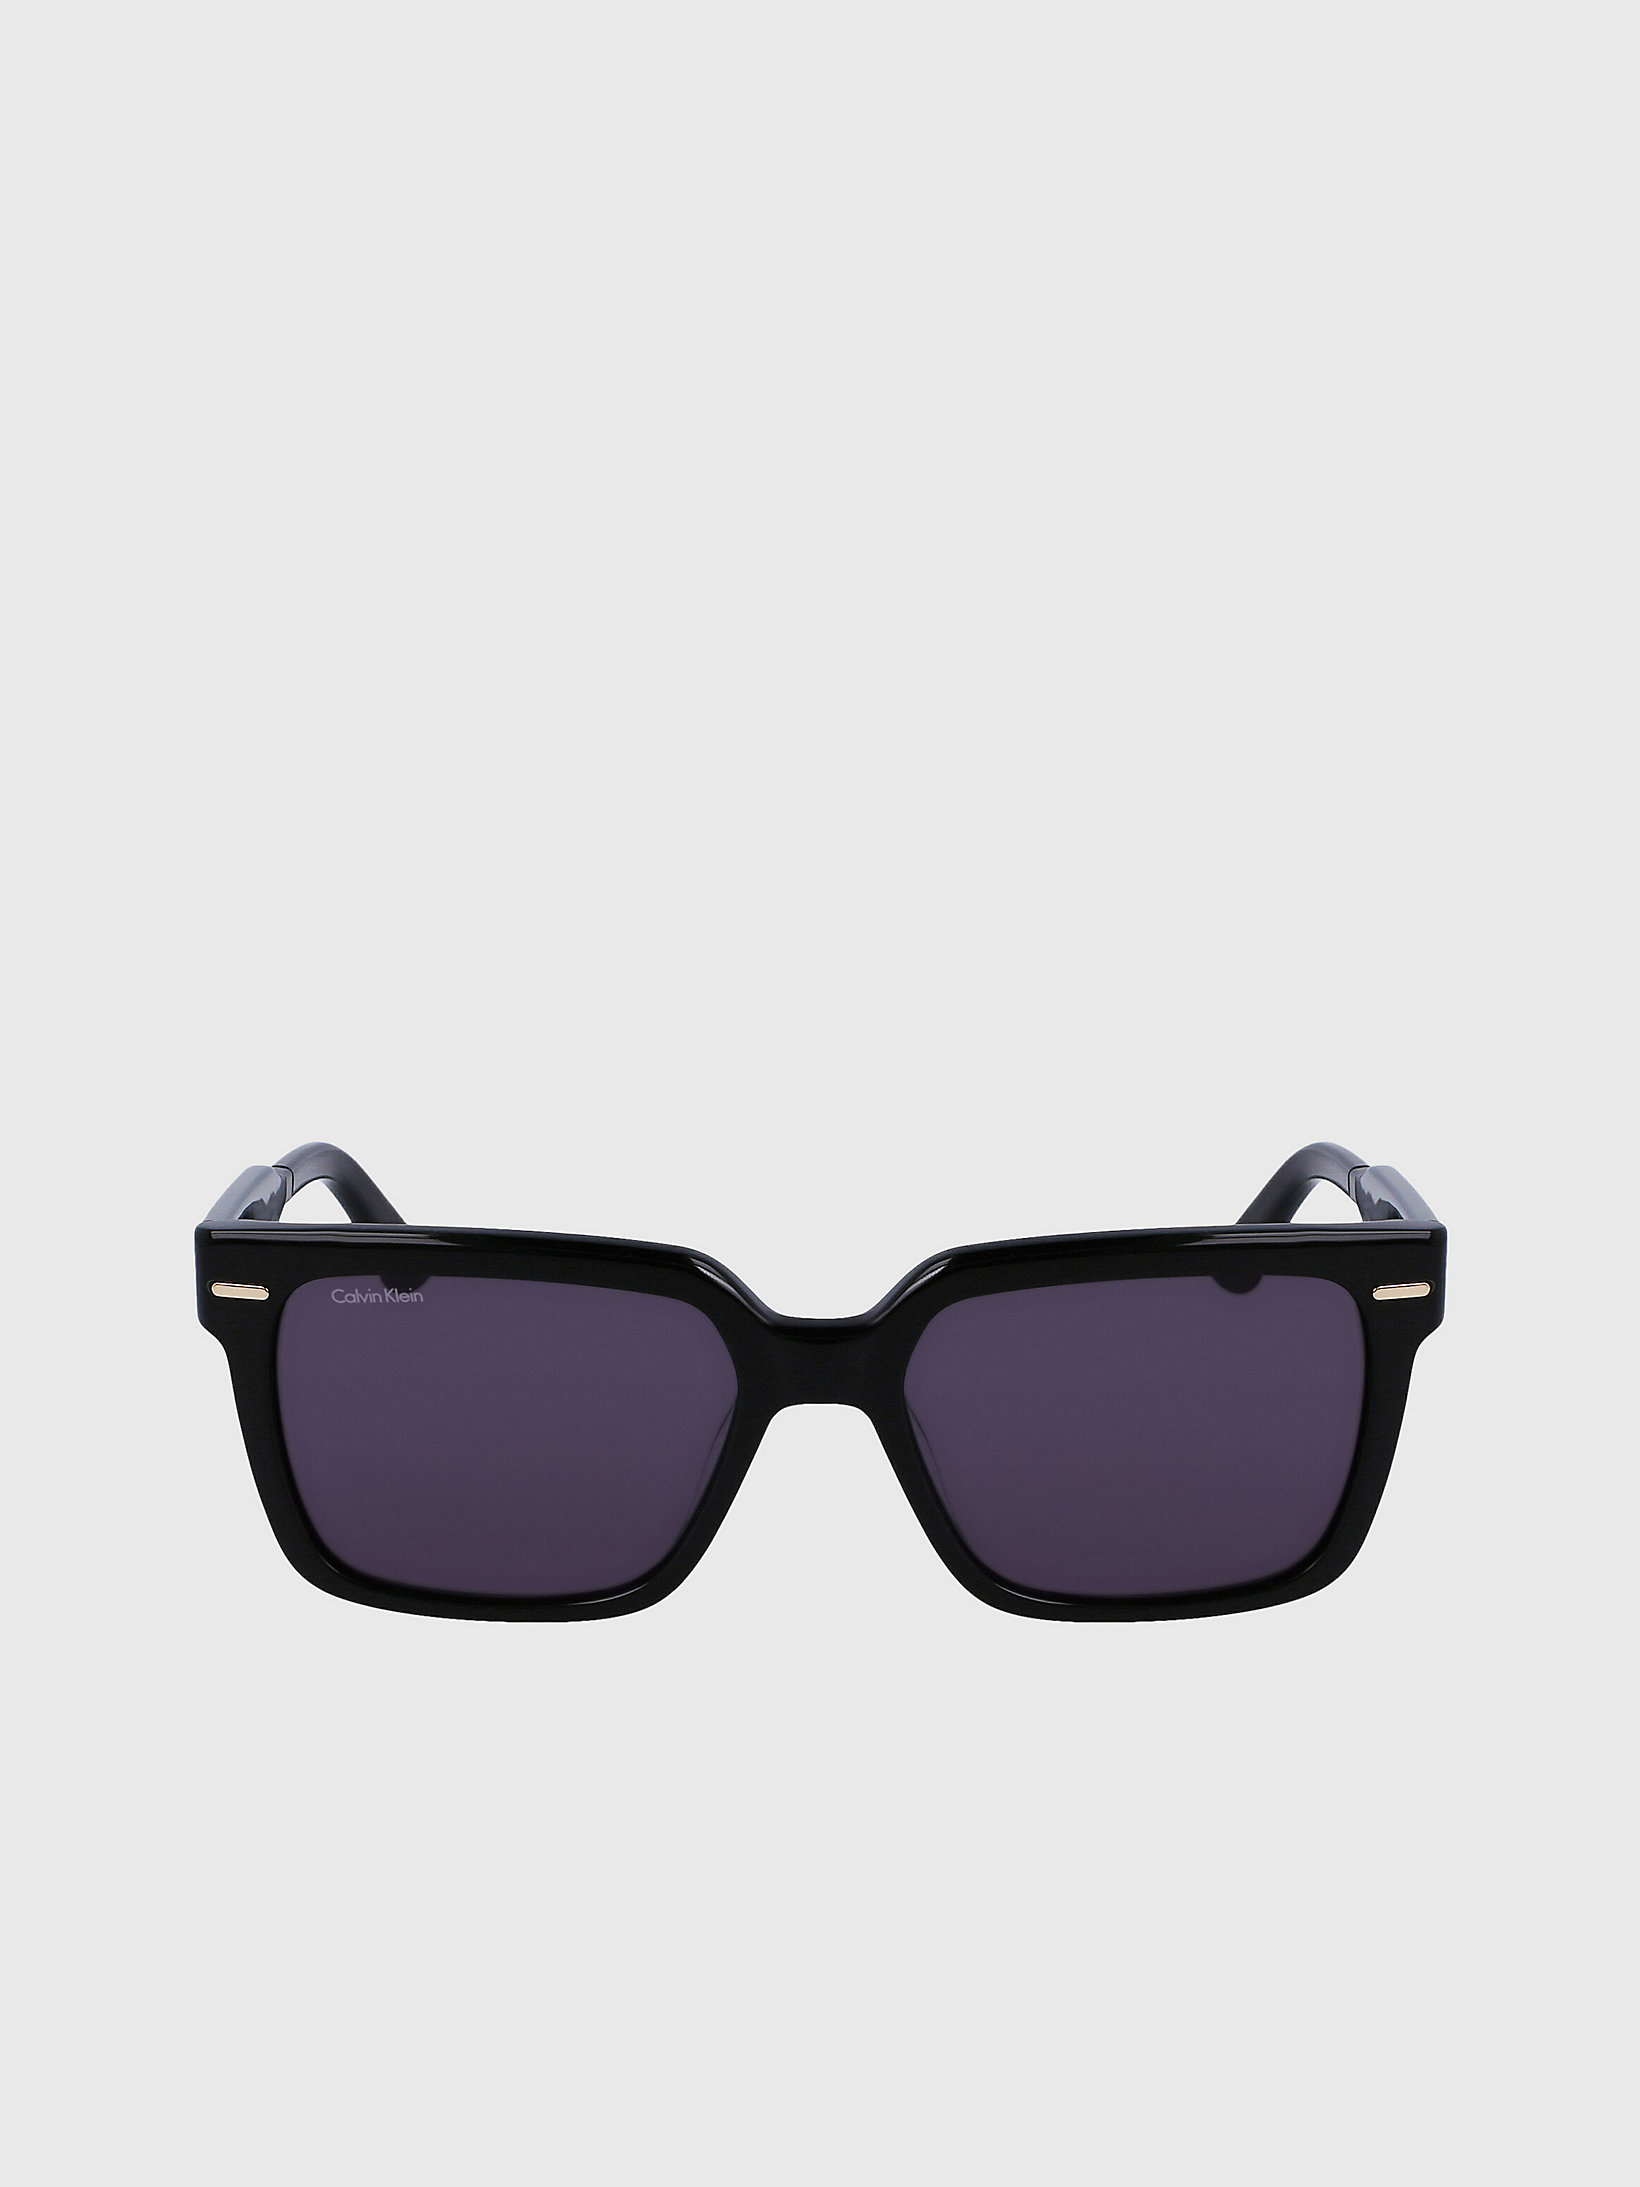 Black > Rechteckige Sonnenbrille Ck22535s > undefined Herren - Calvin Klein